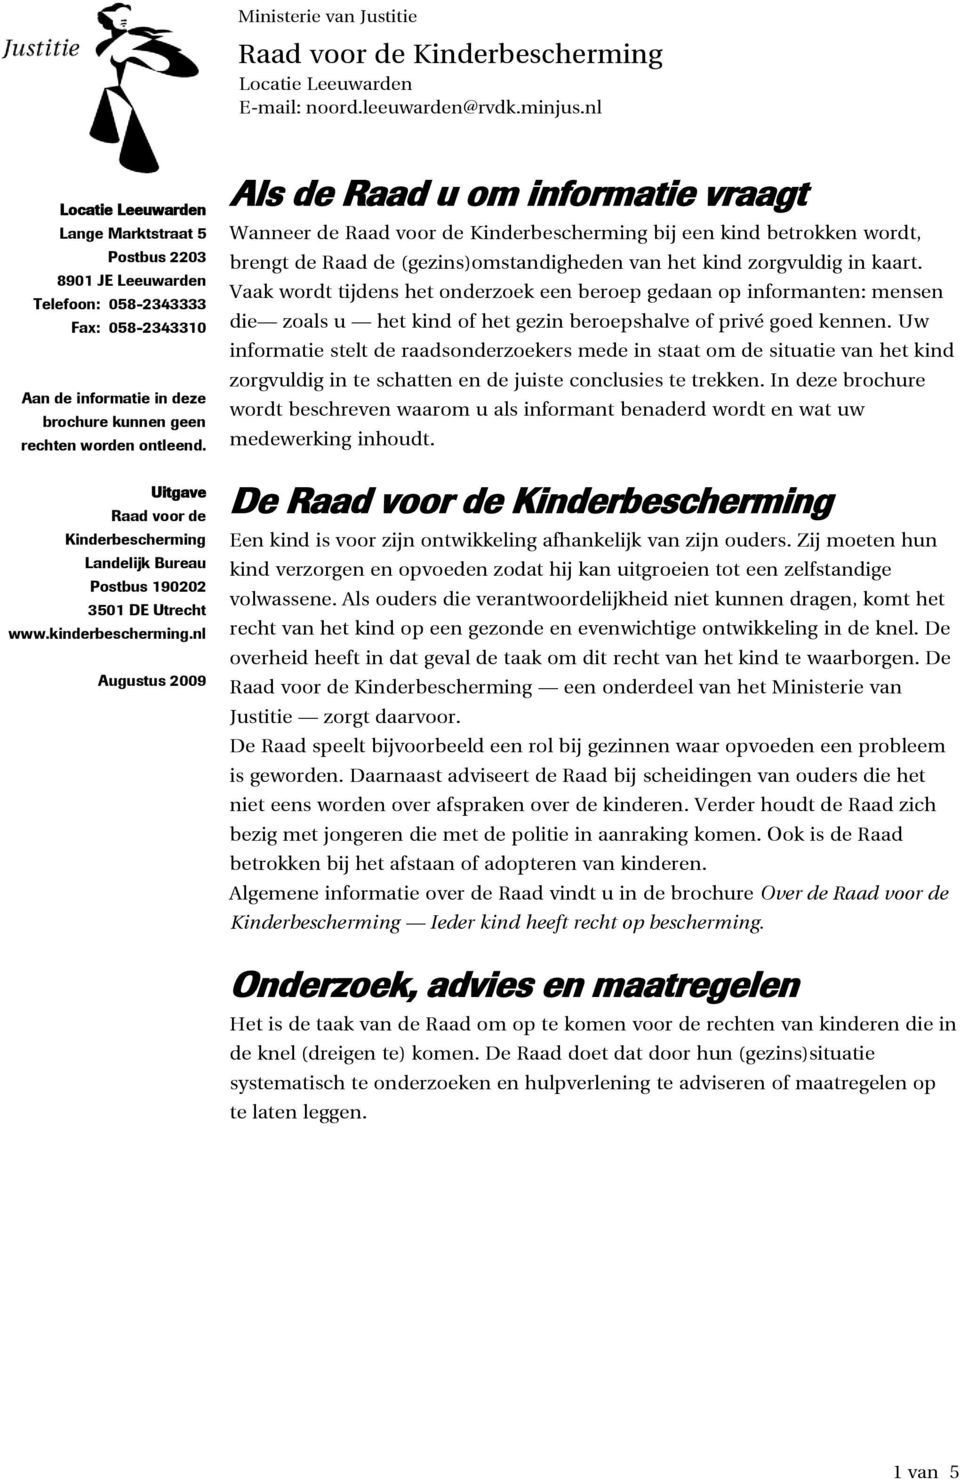 Uitgave Raad voor de Kinderbescherming Landelijk Bureau Postbus 190202 3501 DE Utrecht www.kinderbescherming.